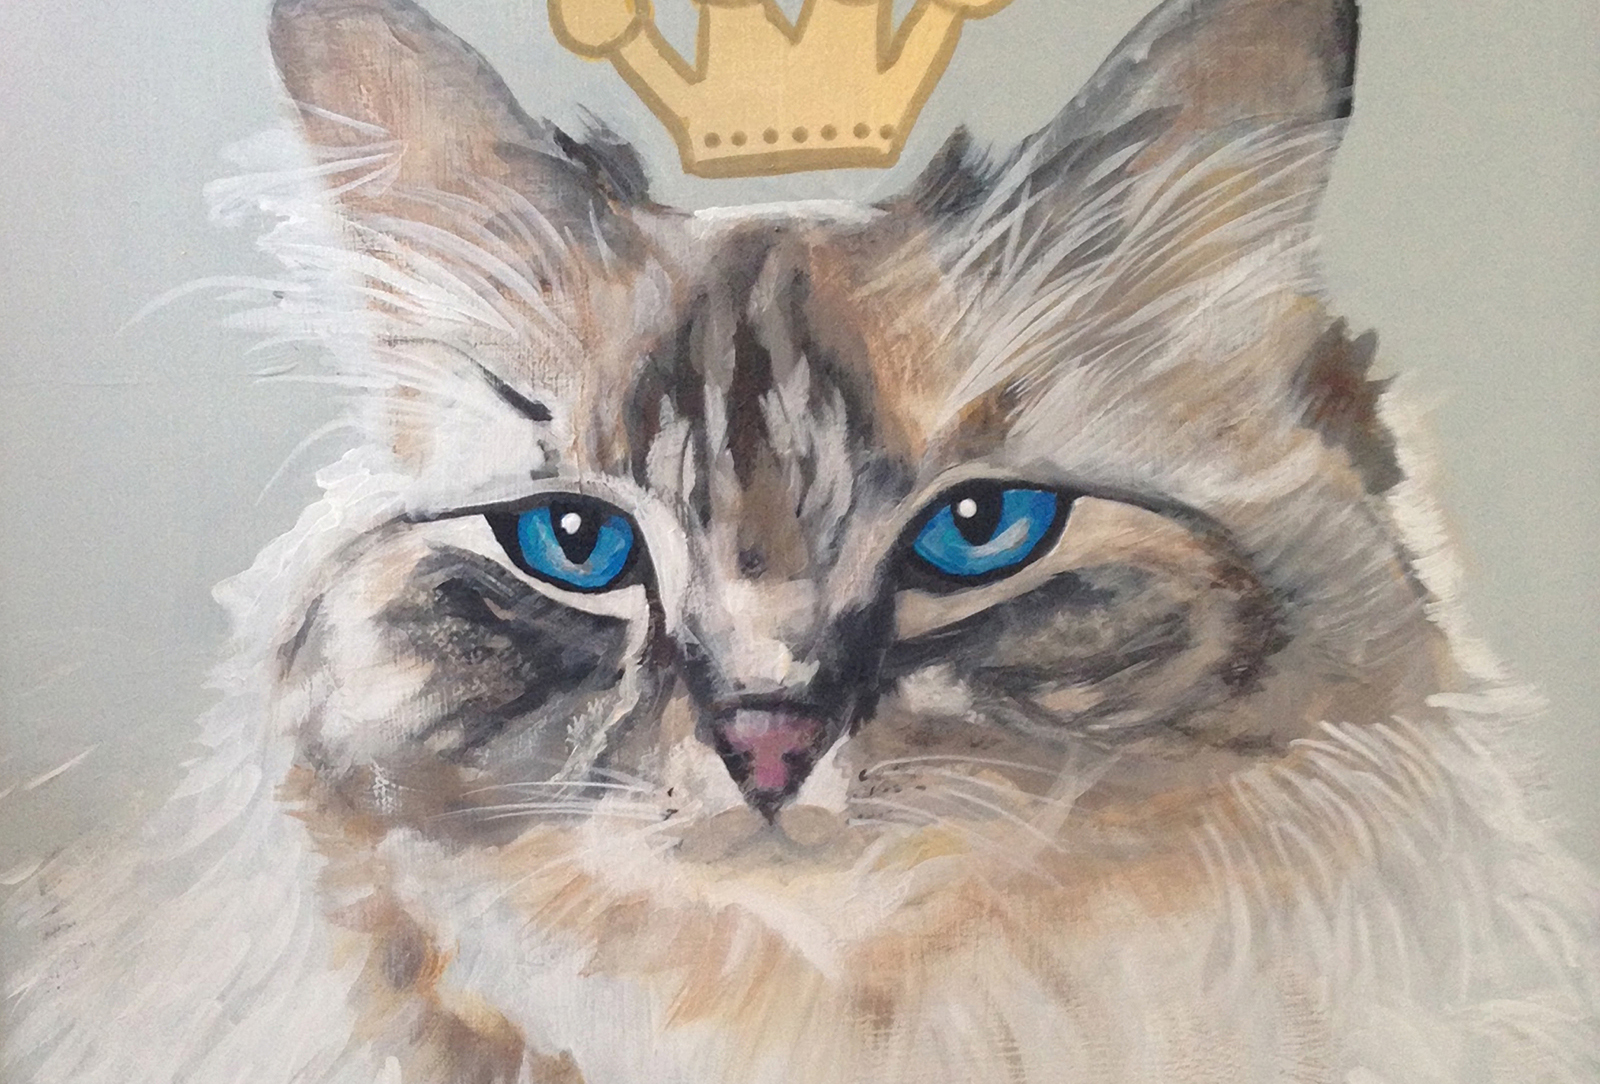 donna-rhodes-fur-family-portrait-queen-cat